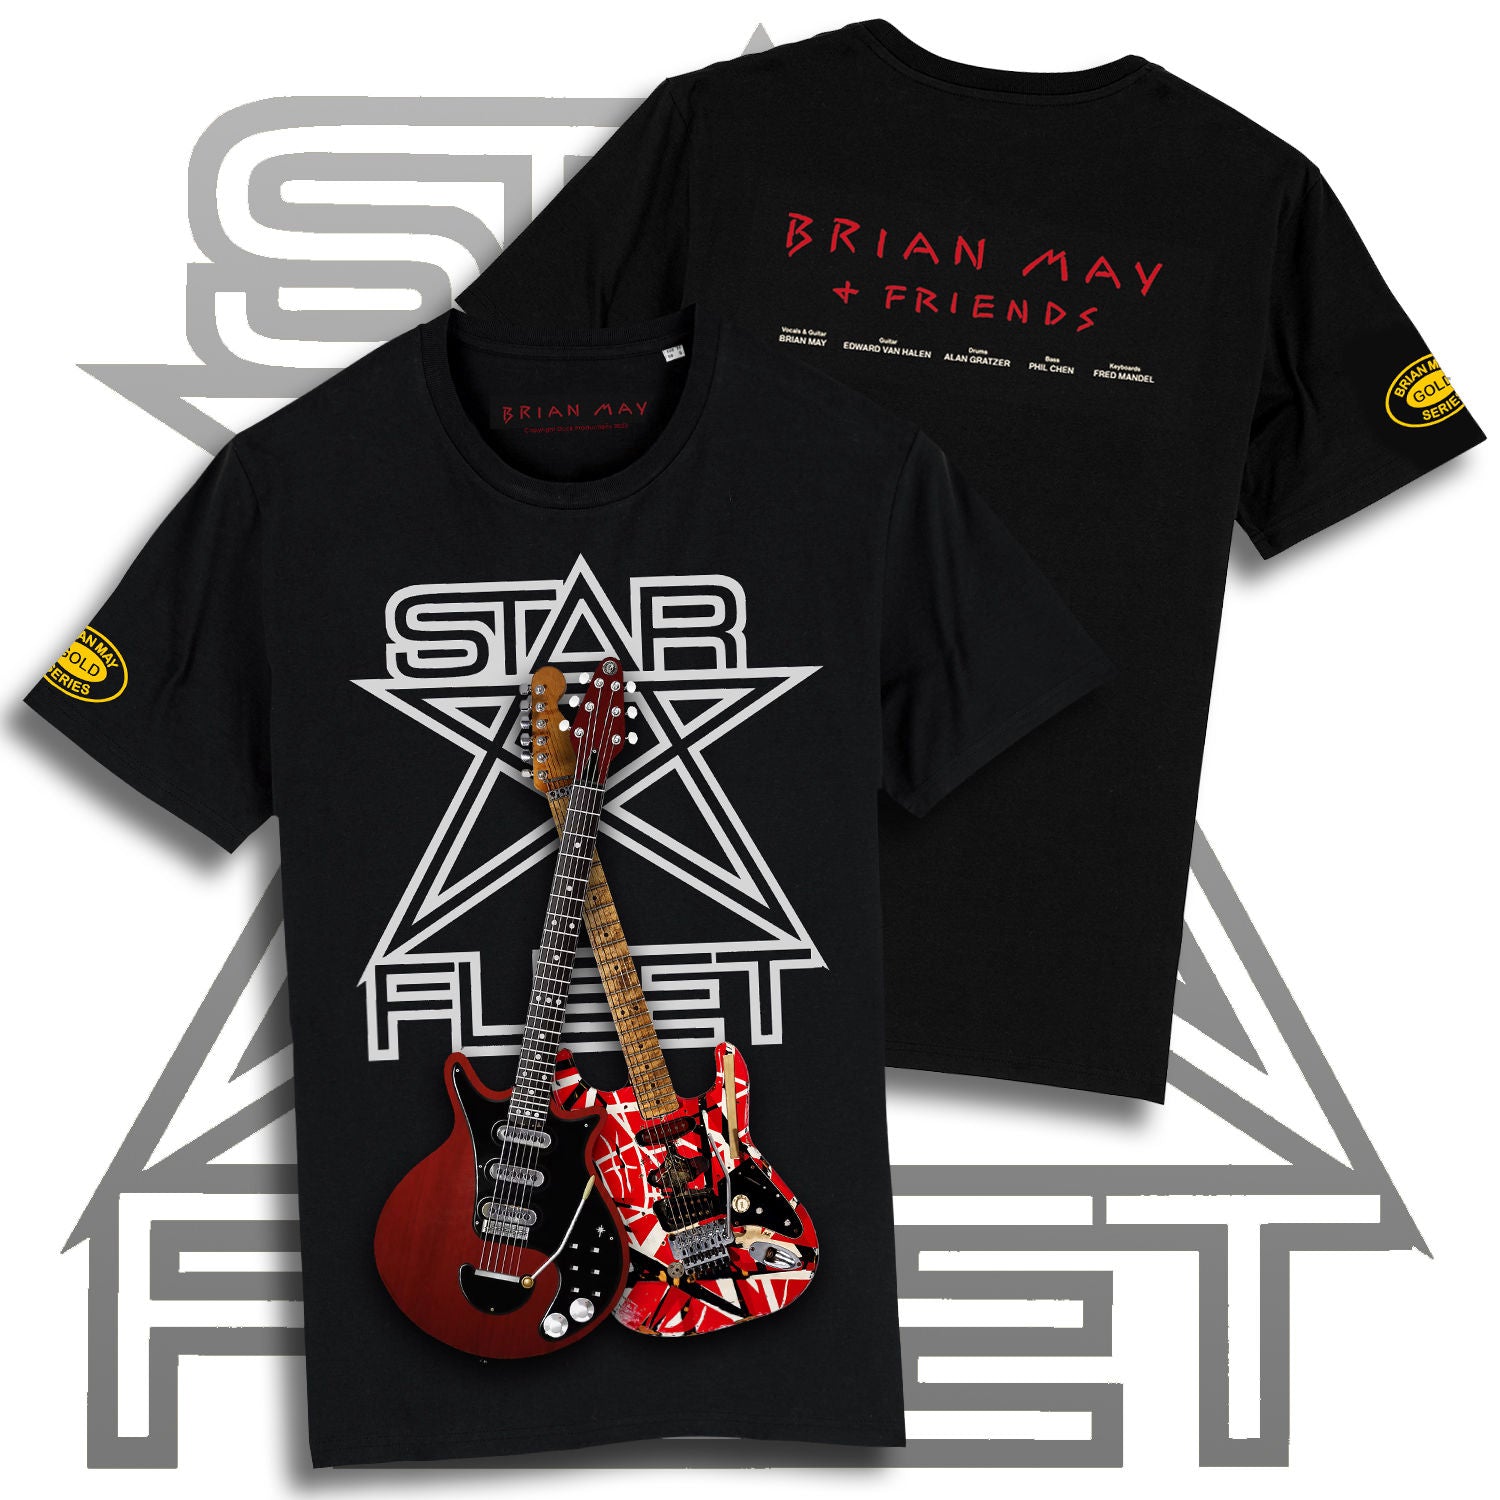 Brian May - Star Fleet Brian May Guitar T-Shirt..